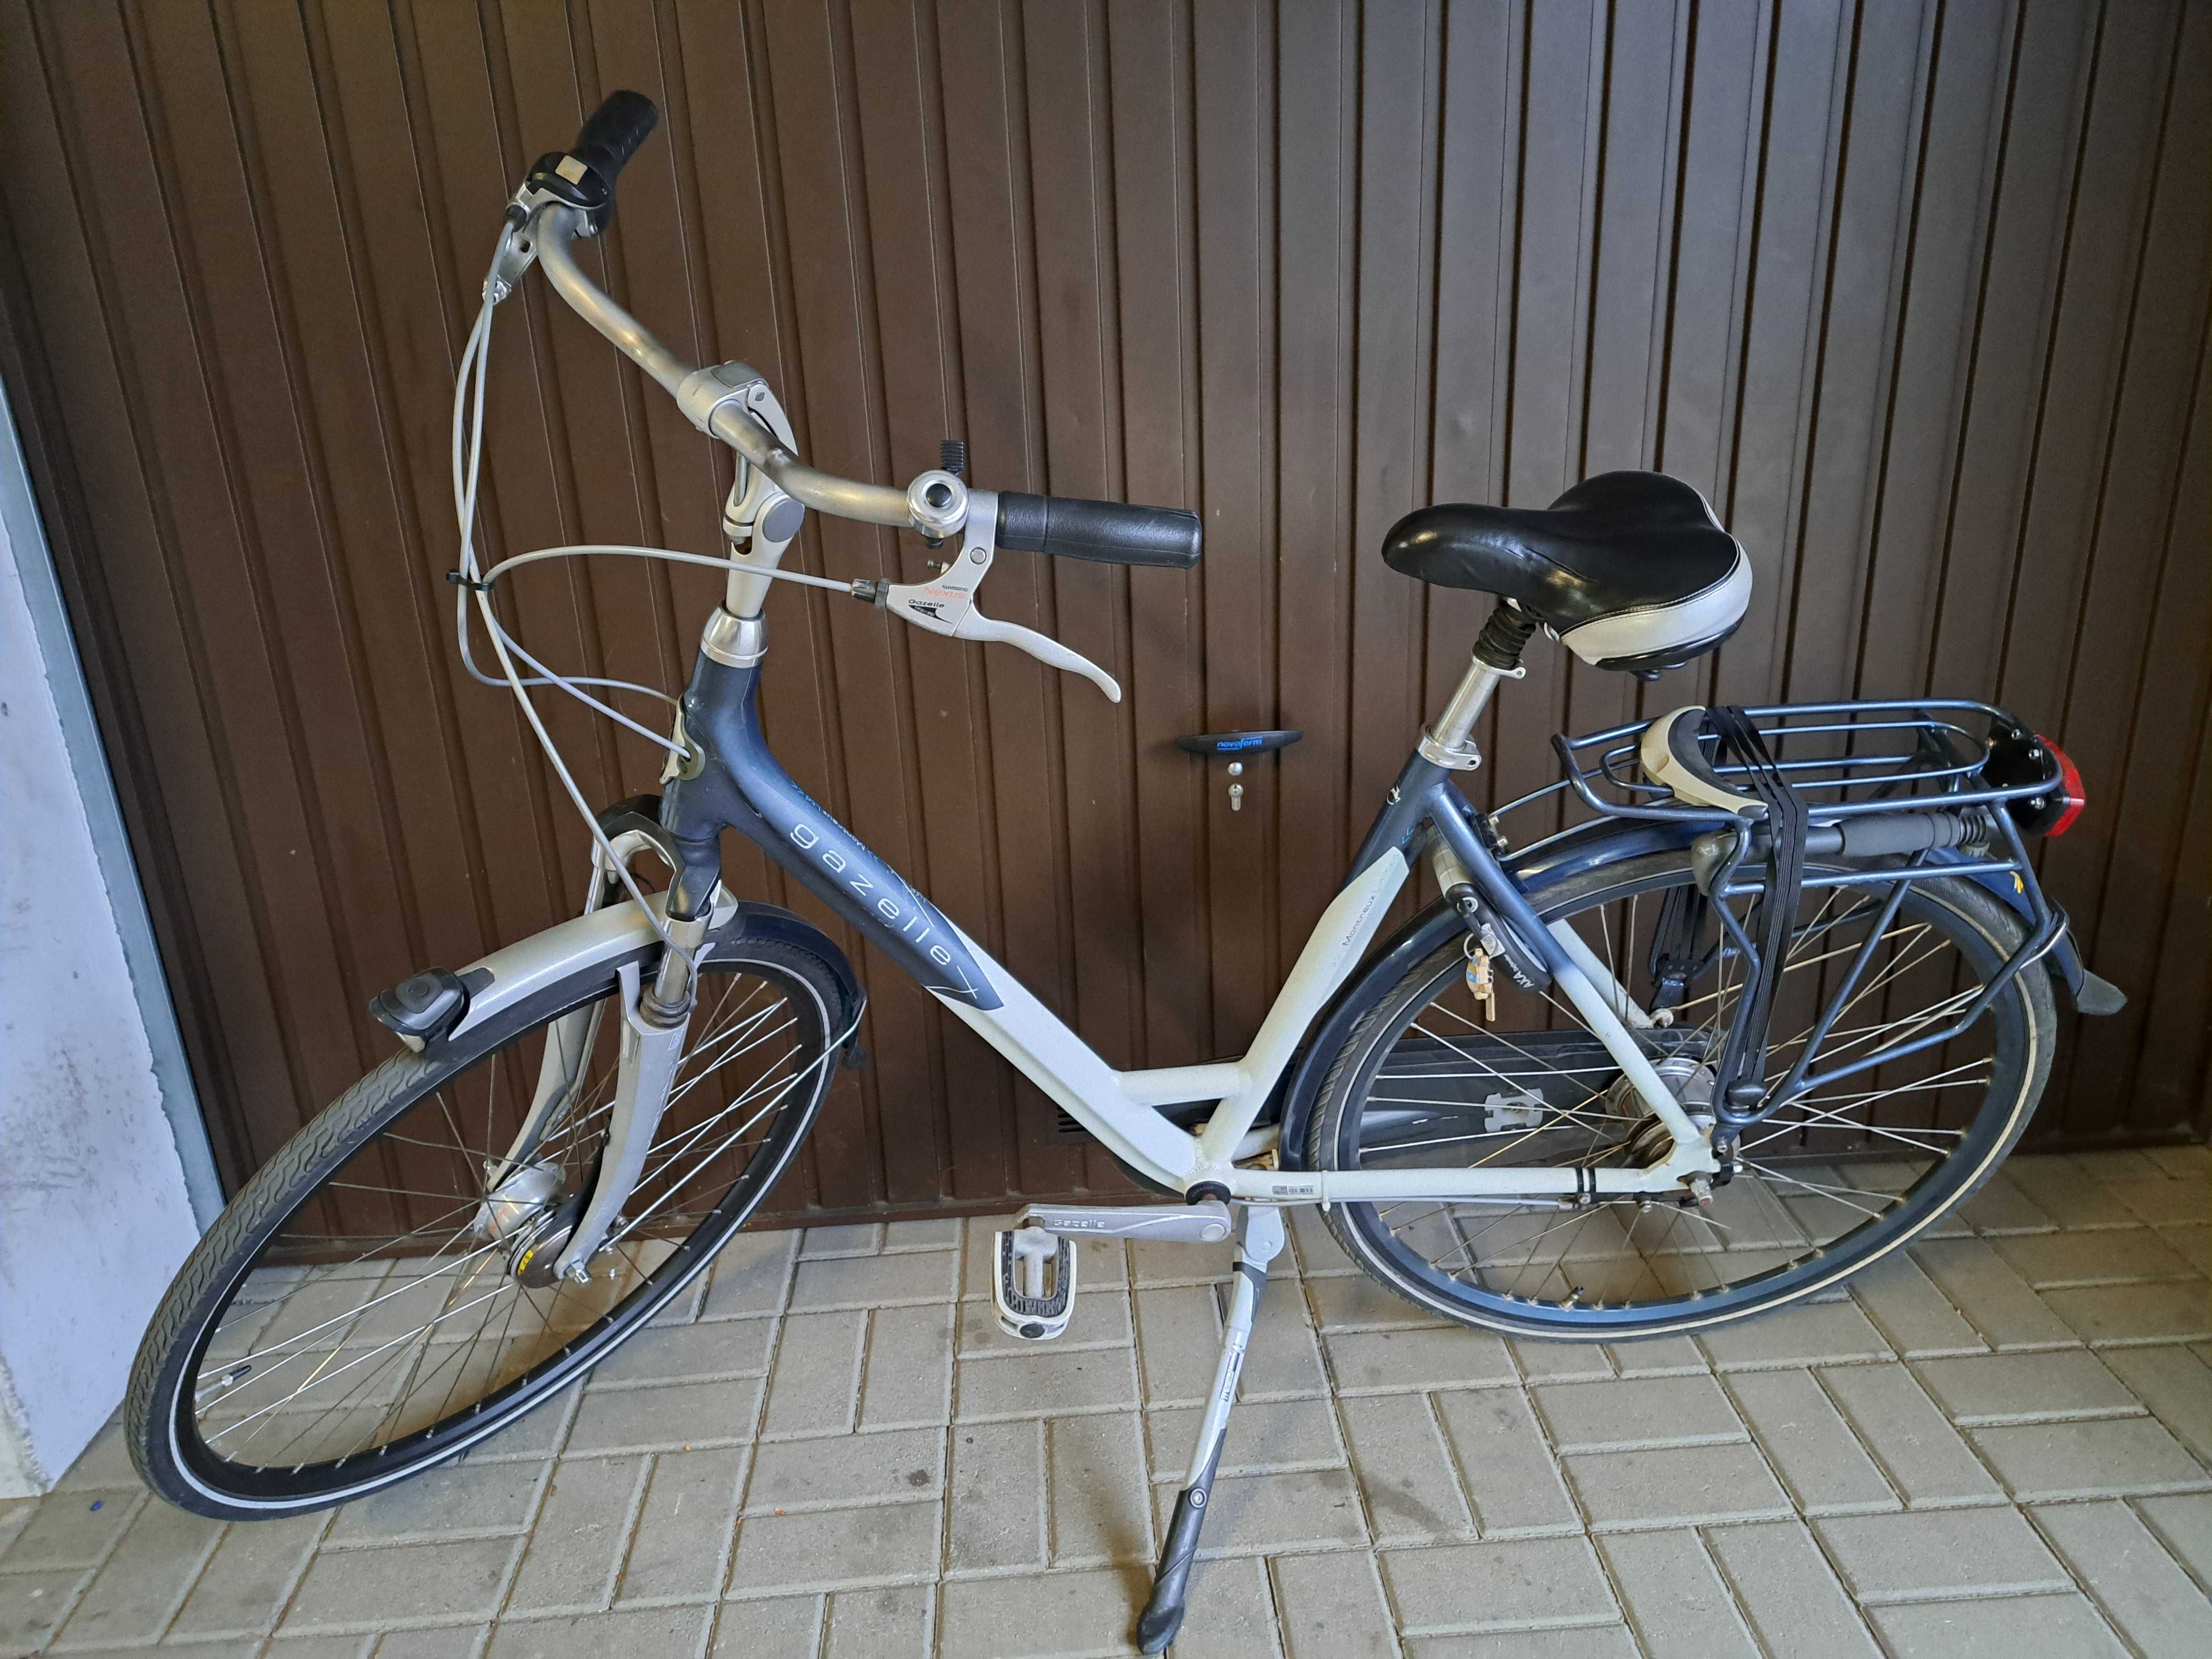 Gazelle aluminiowy rower miejski rama na wzrost 160-180 mega wygodny